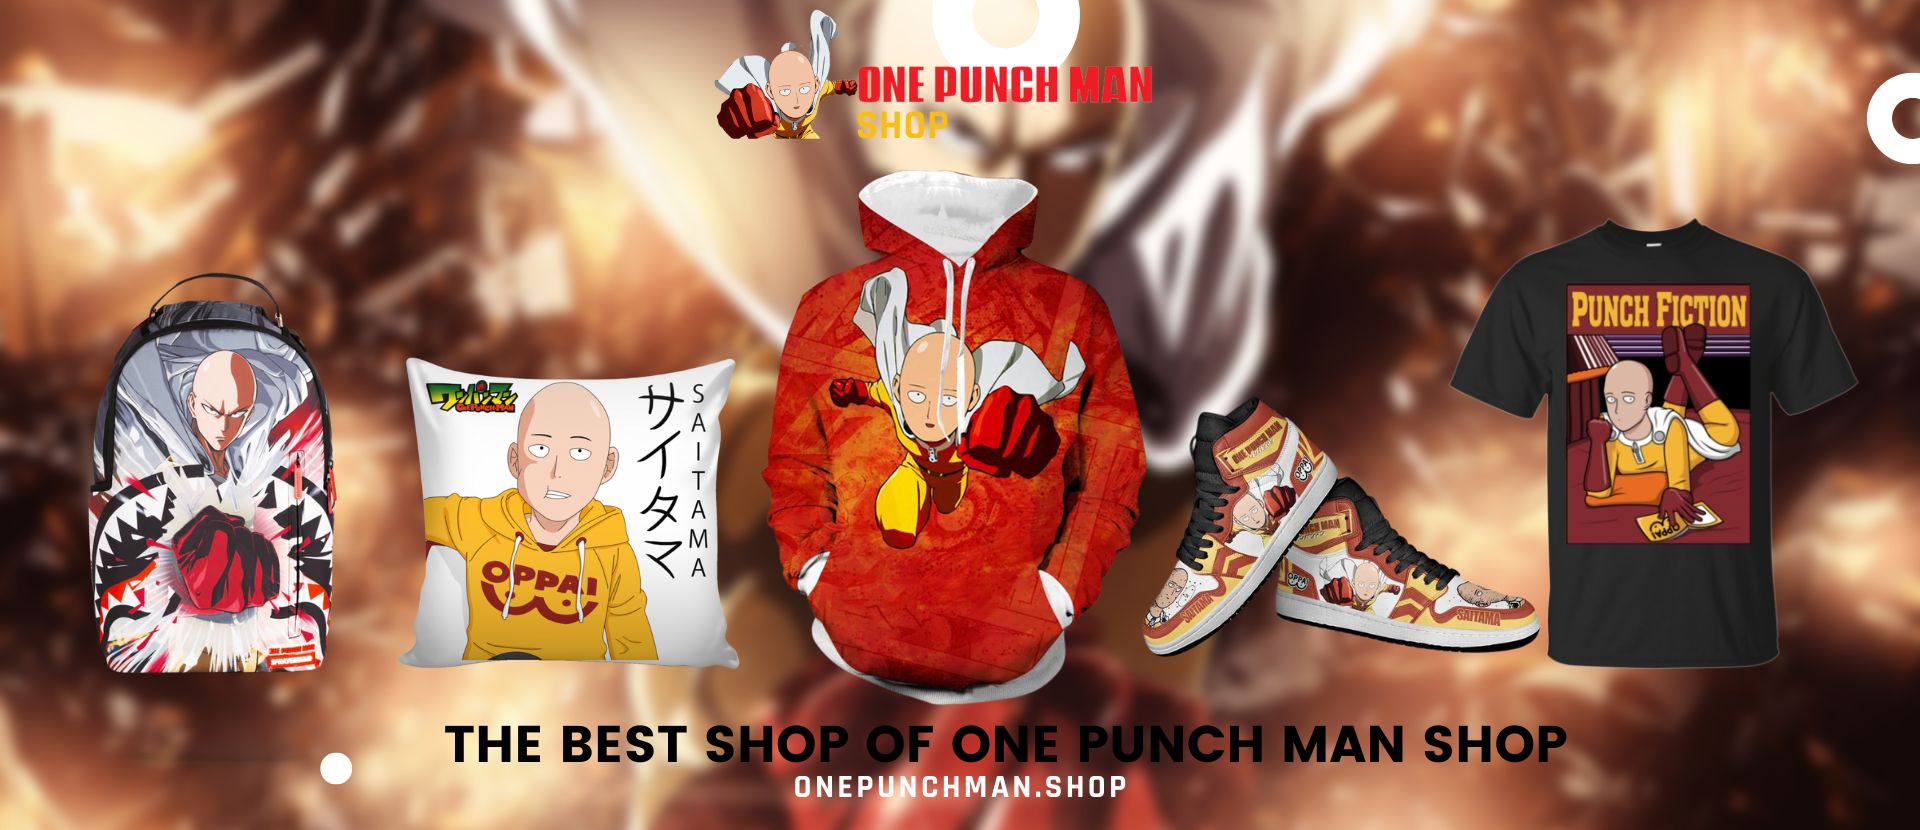 One-Punch Man, Saitama, red gloves, yellow, manga, anime